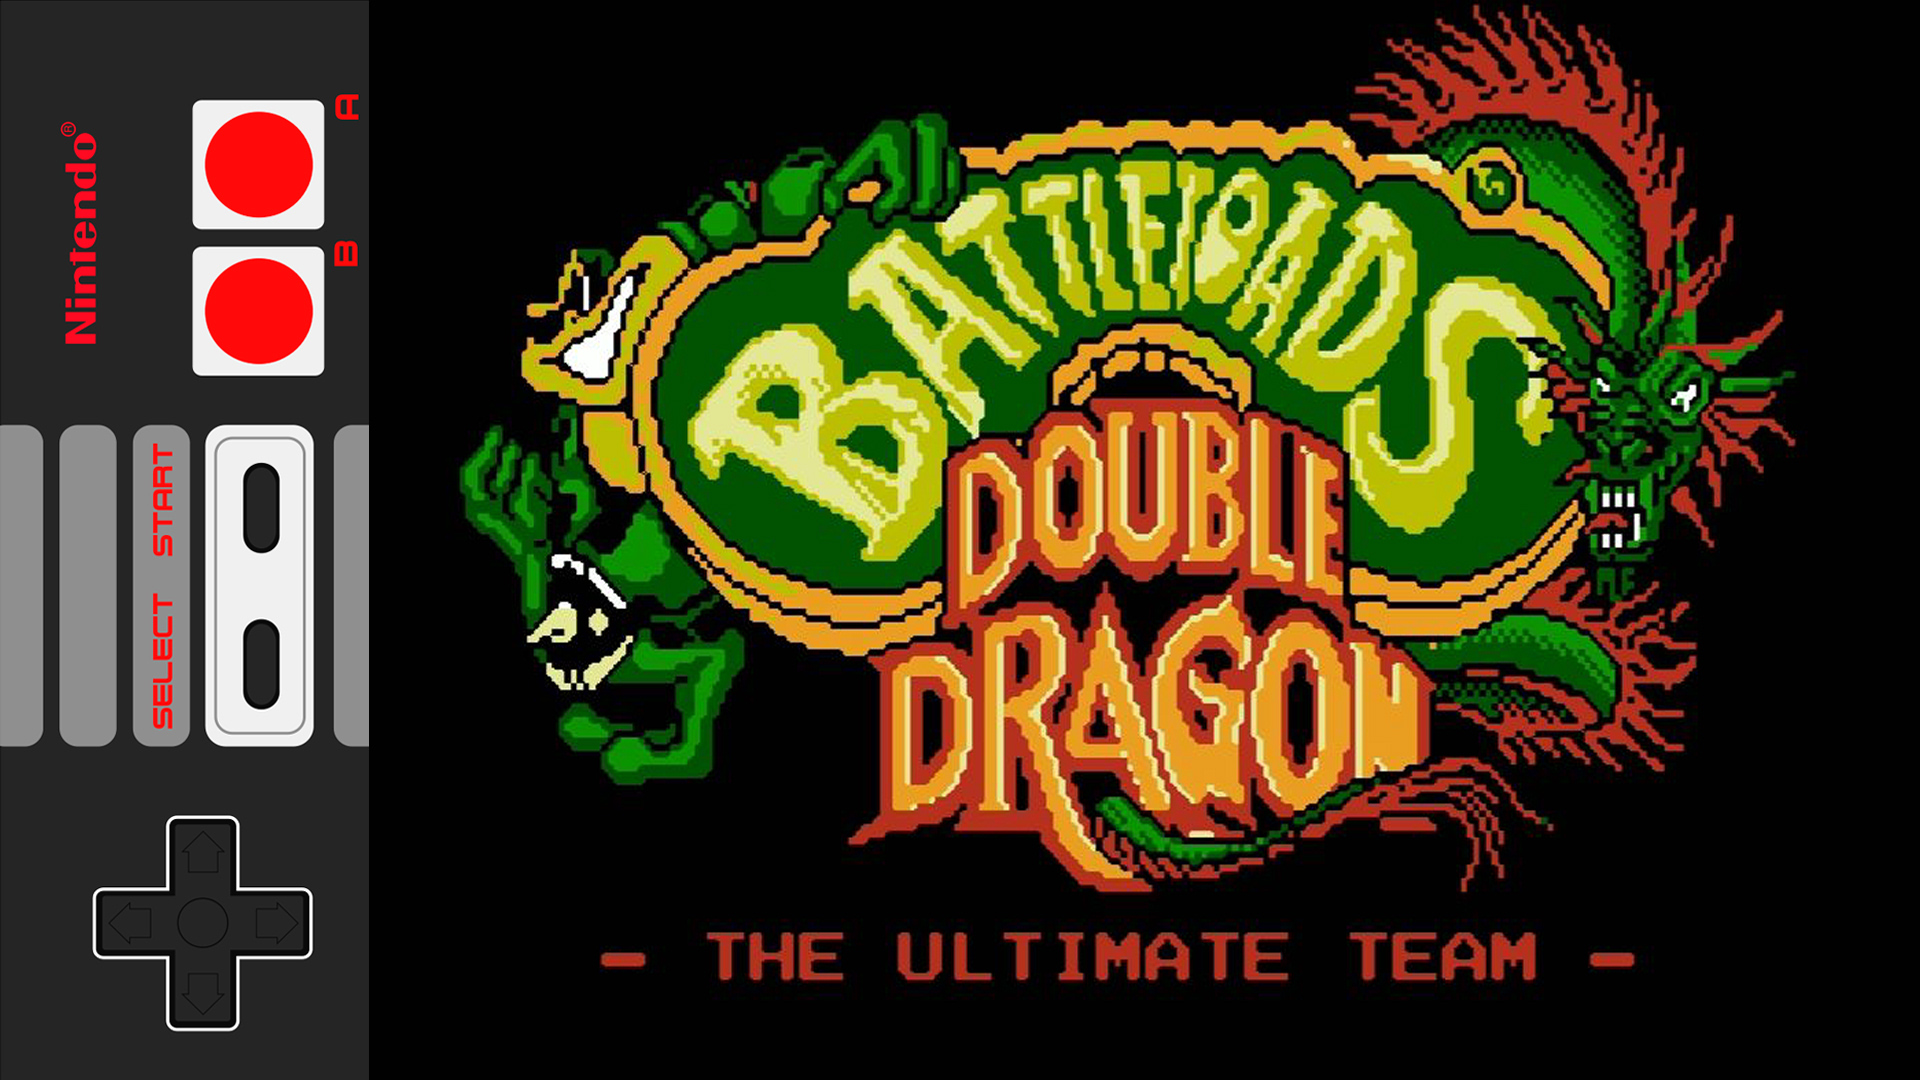 Battletoads ultimate. Battletoads Double Dragon the Ultimate Team NES. Battletoads & Double Dragon - the Ultimate Team. Battletoads Double Dragon Денди. Battletoads Double Dragon Sega.